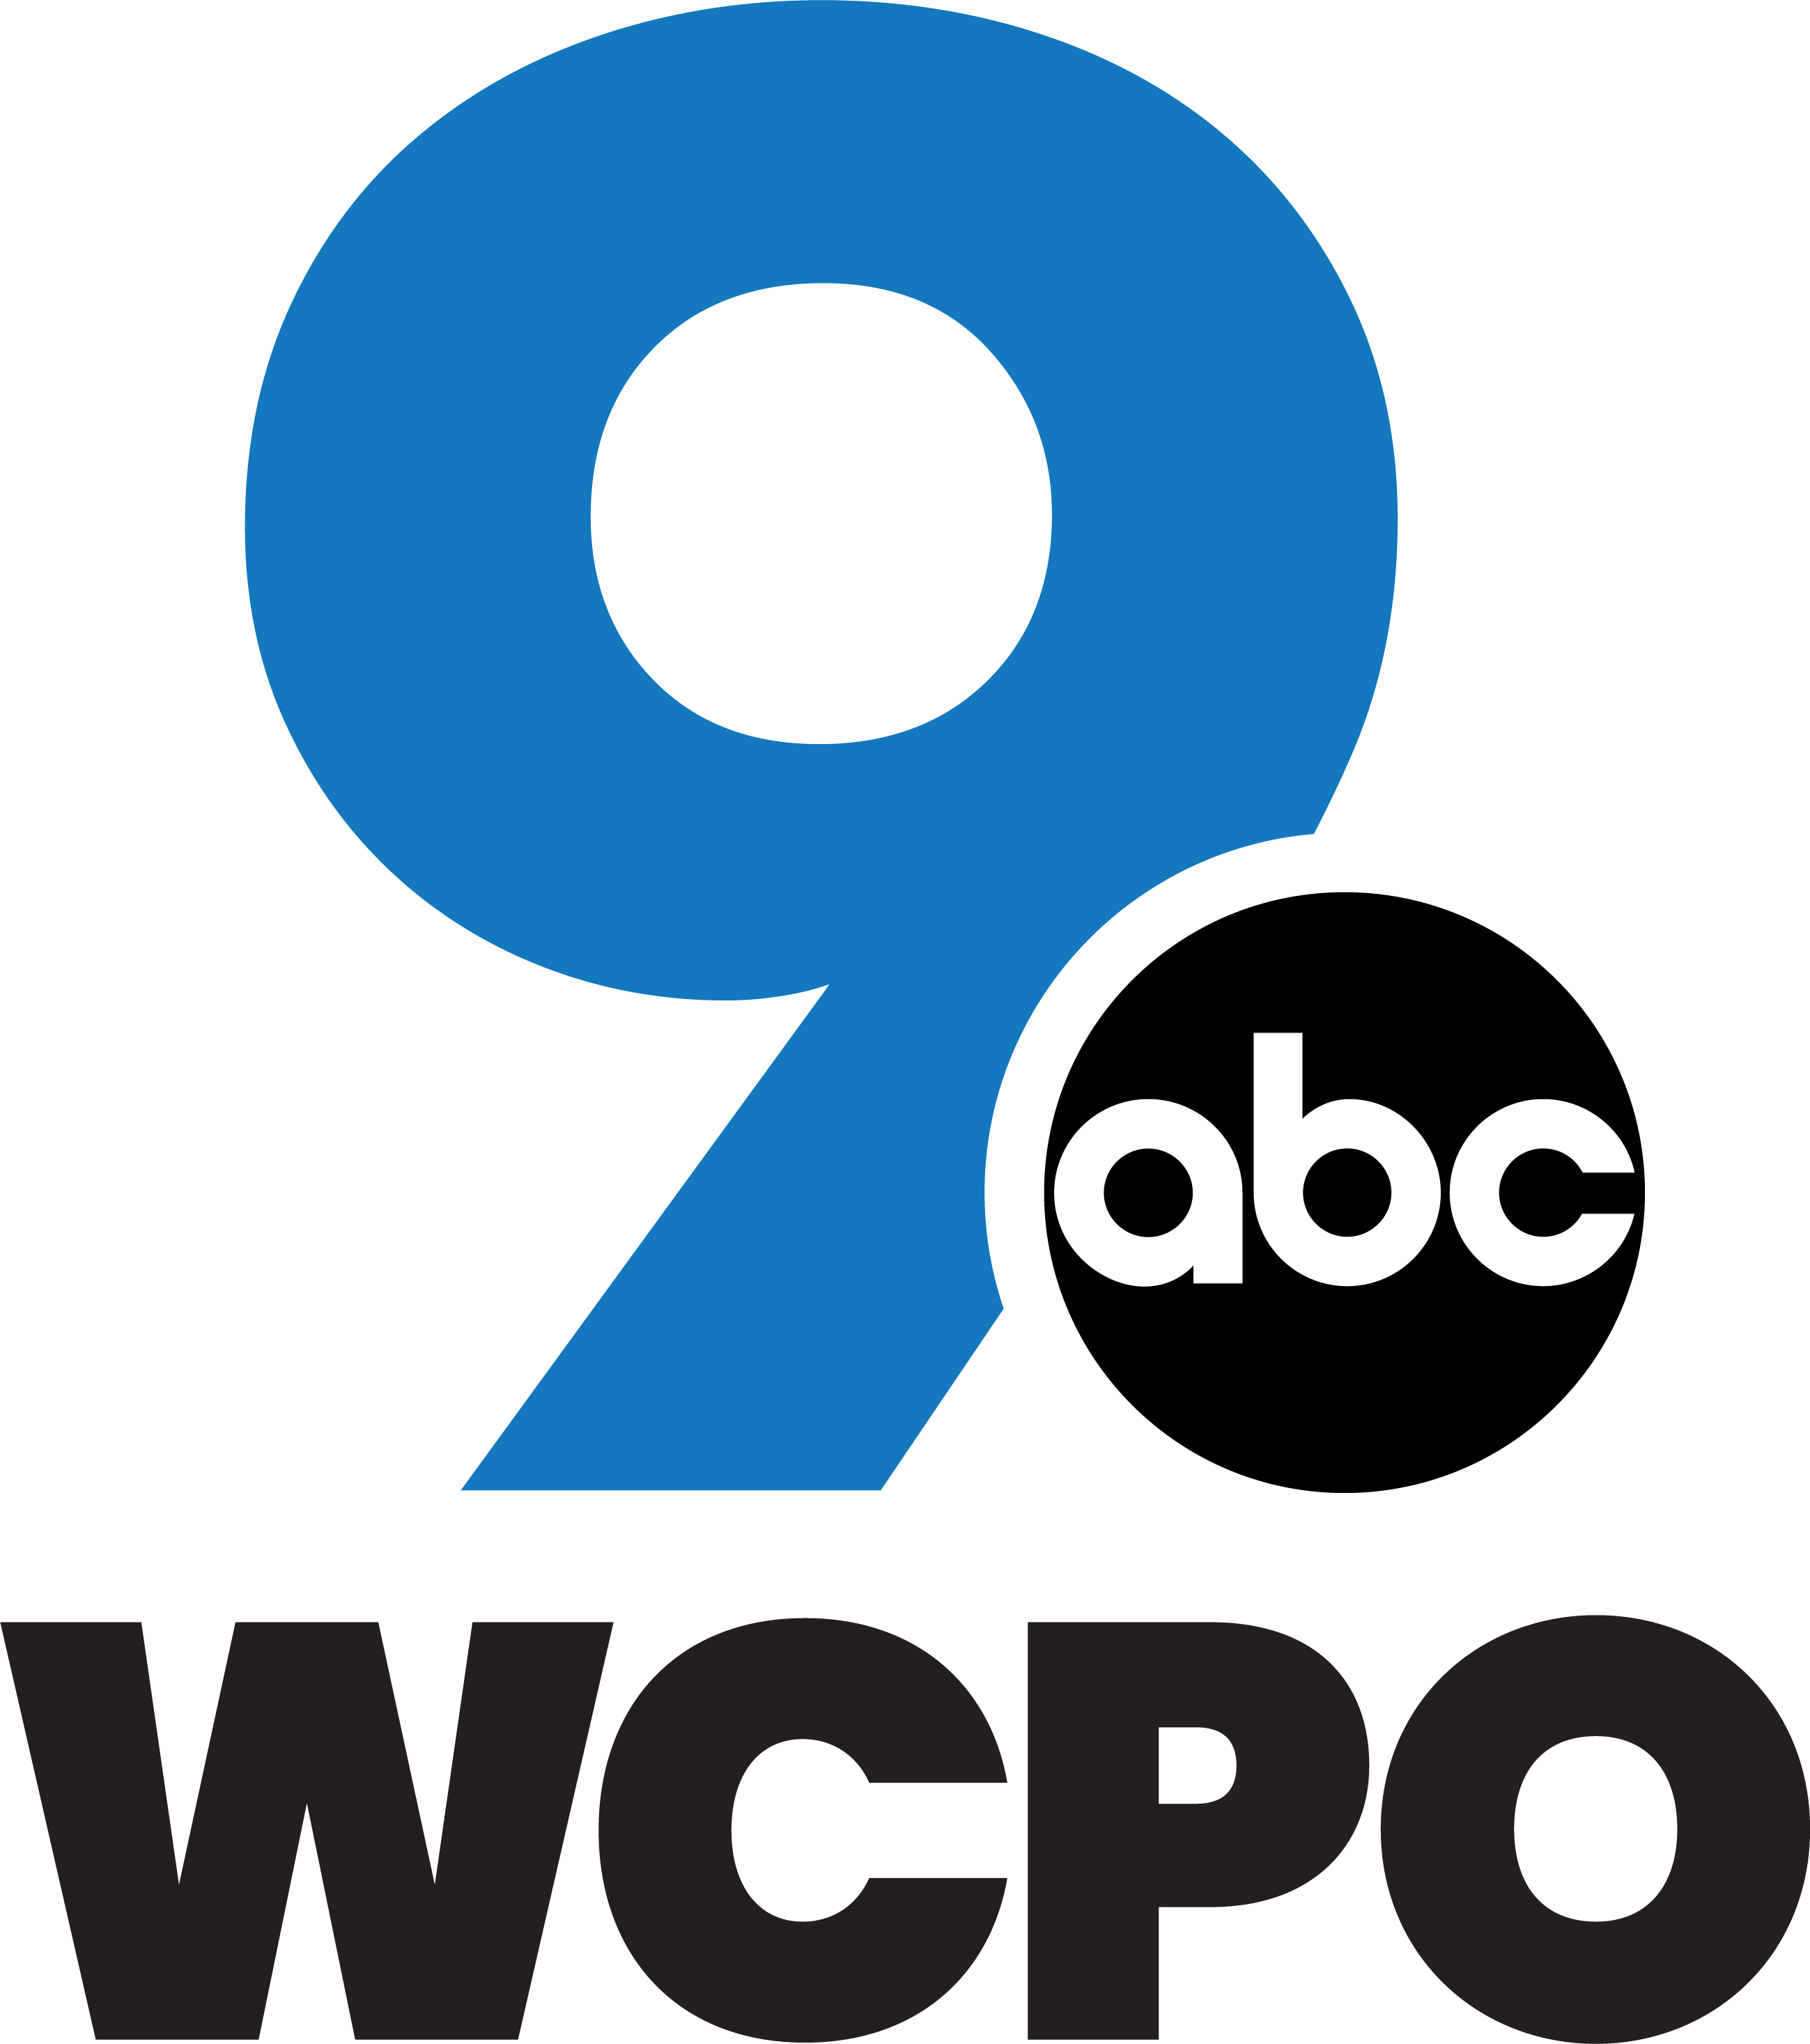 WCPO-TV - Wikipedia